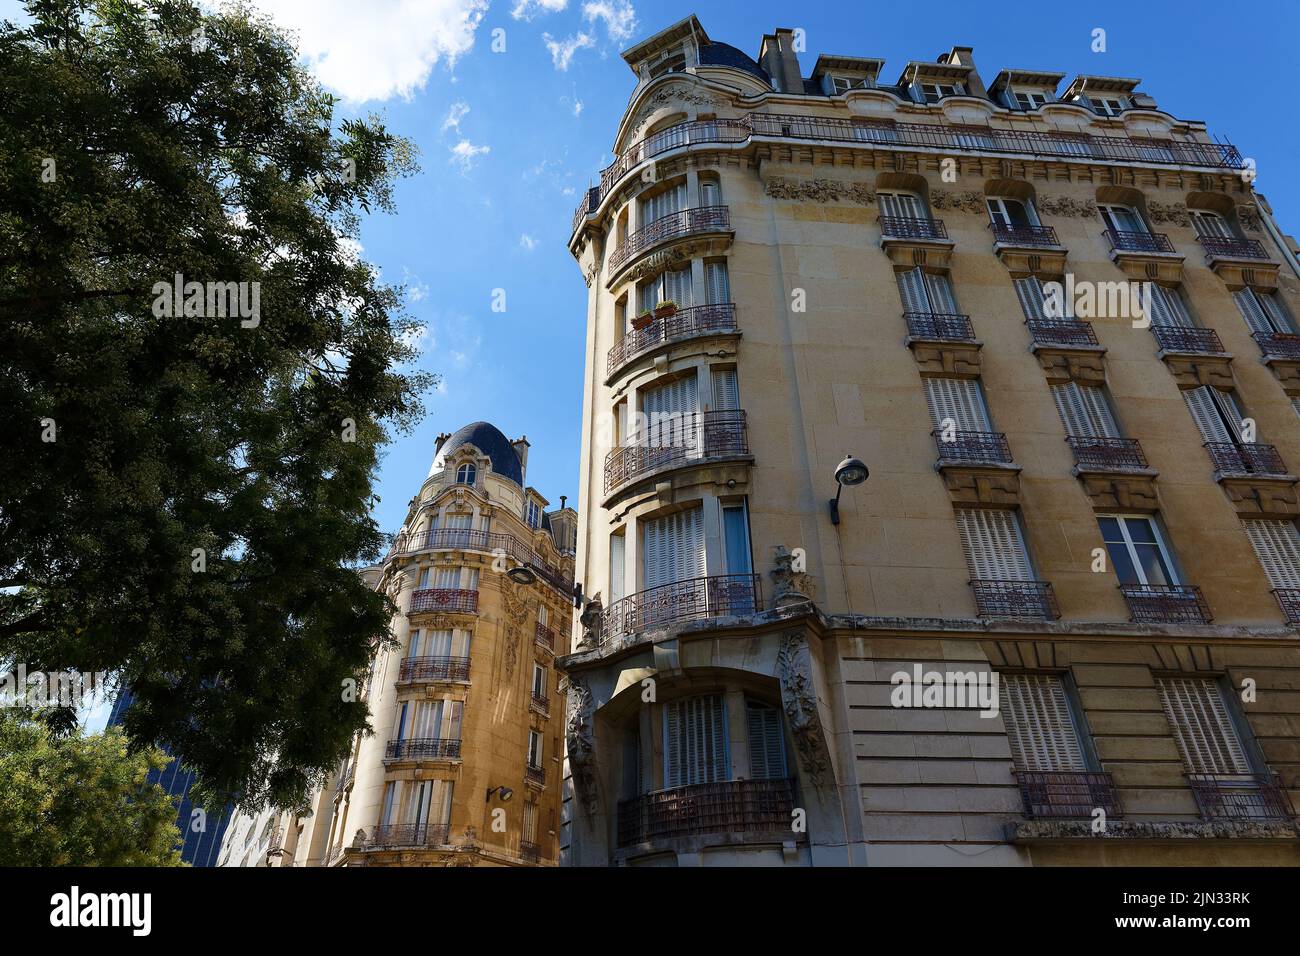 Las fachadas de las casas tradicionales francesas con balcones y ventanas típicos. París. Foto de stock